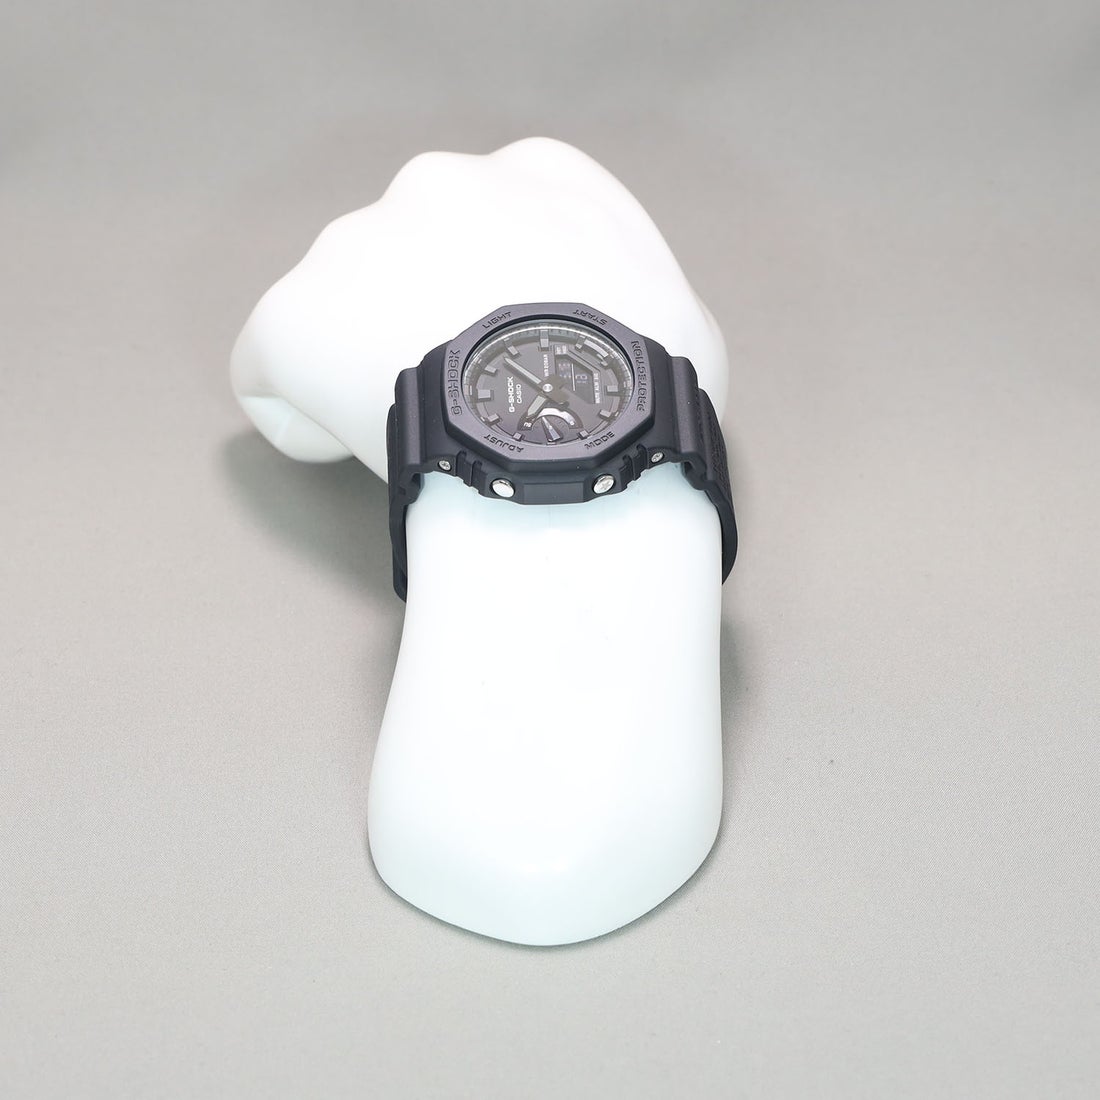 2023年5月発売 カシオ G-SHOCK GA-114RE-1AJR G-SHOCK 40th Annive sa y REMASTER BLACK  リマスター・ブラック マイルストーン 石碑 オールブラック バイオマスプラスチック 耐衝撃構造 耐磁時計 20気圧防水 LEDライト メンズ腕時計